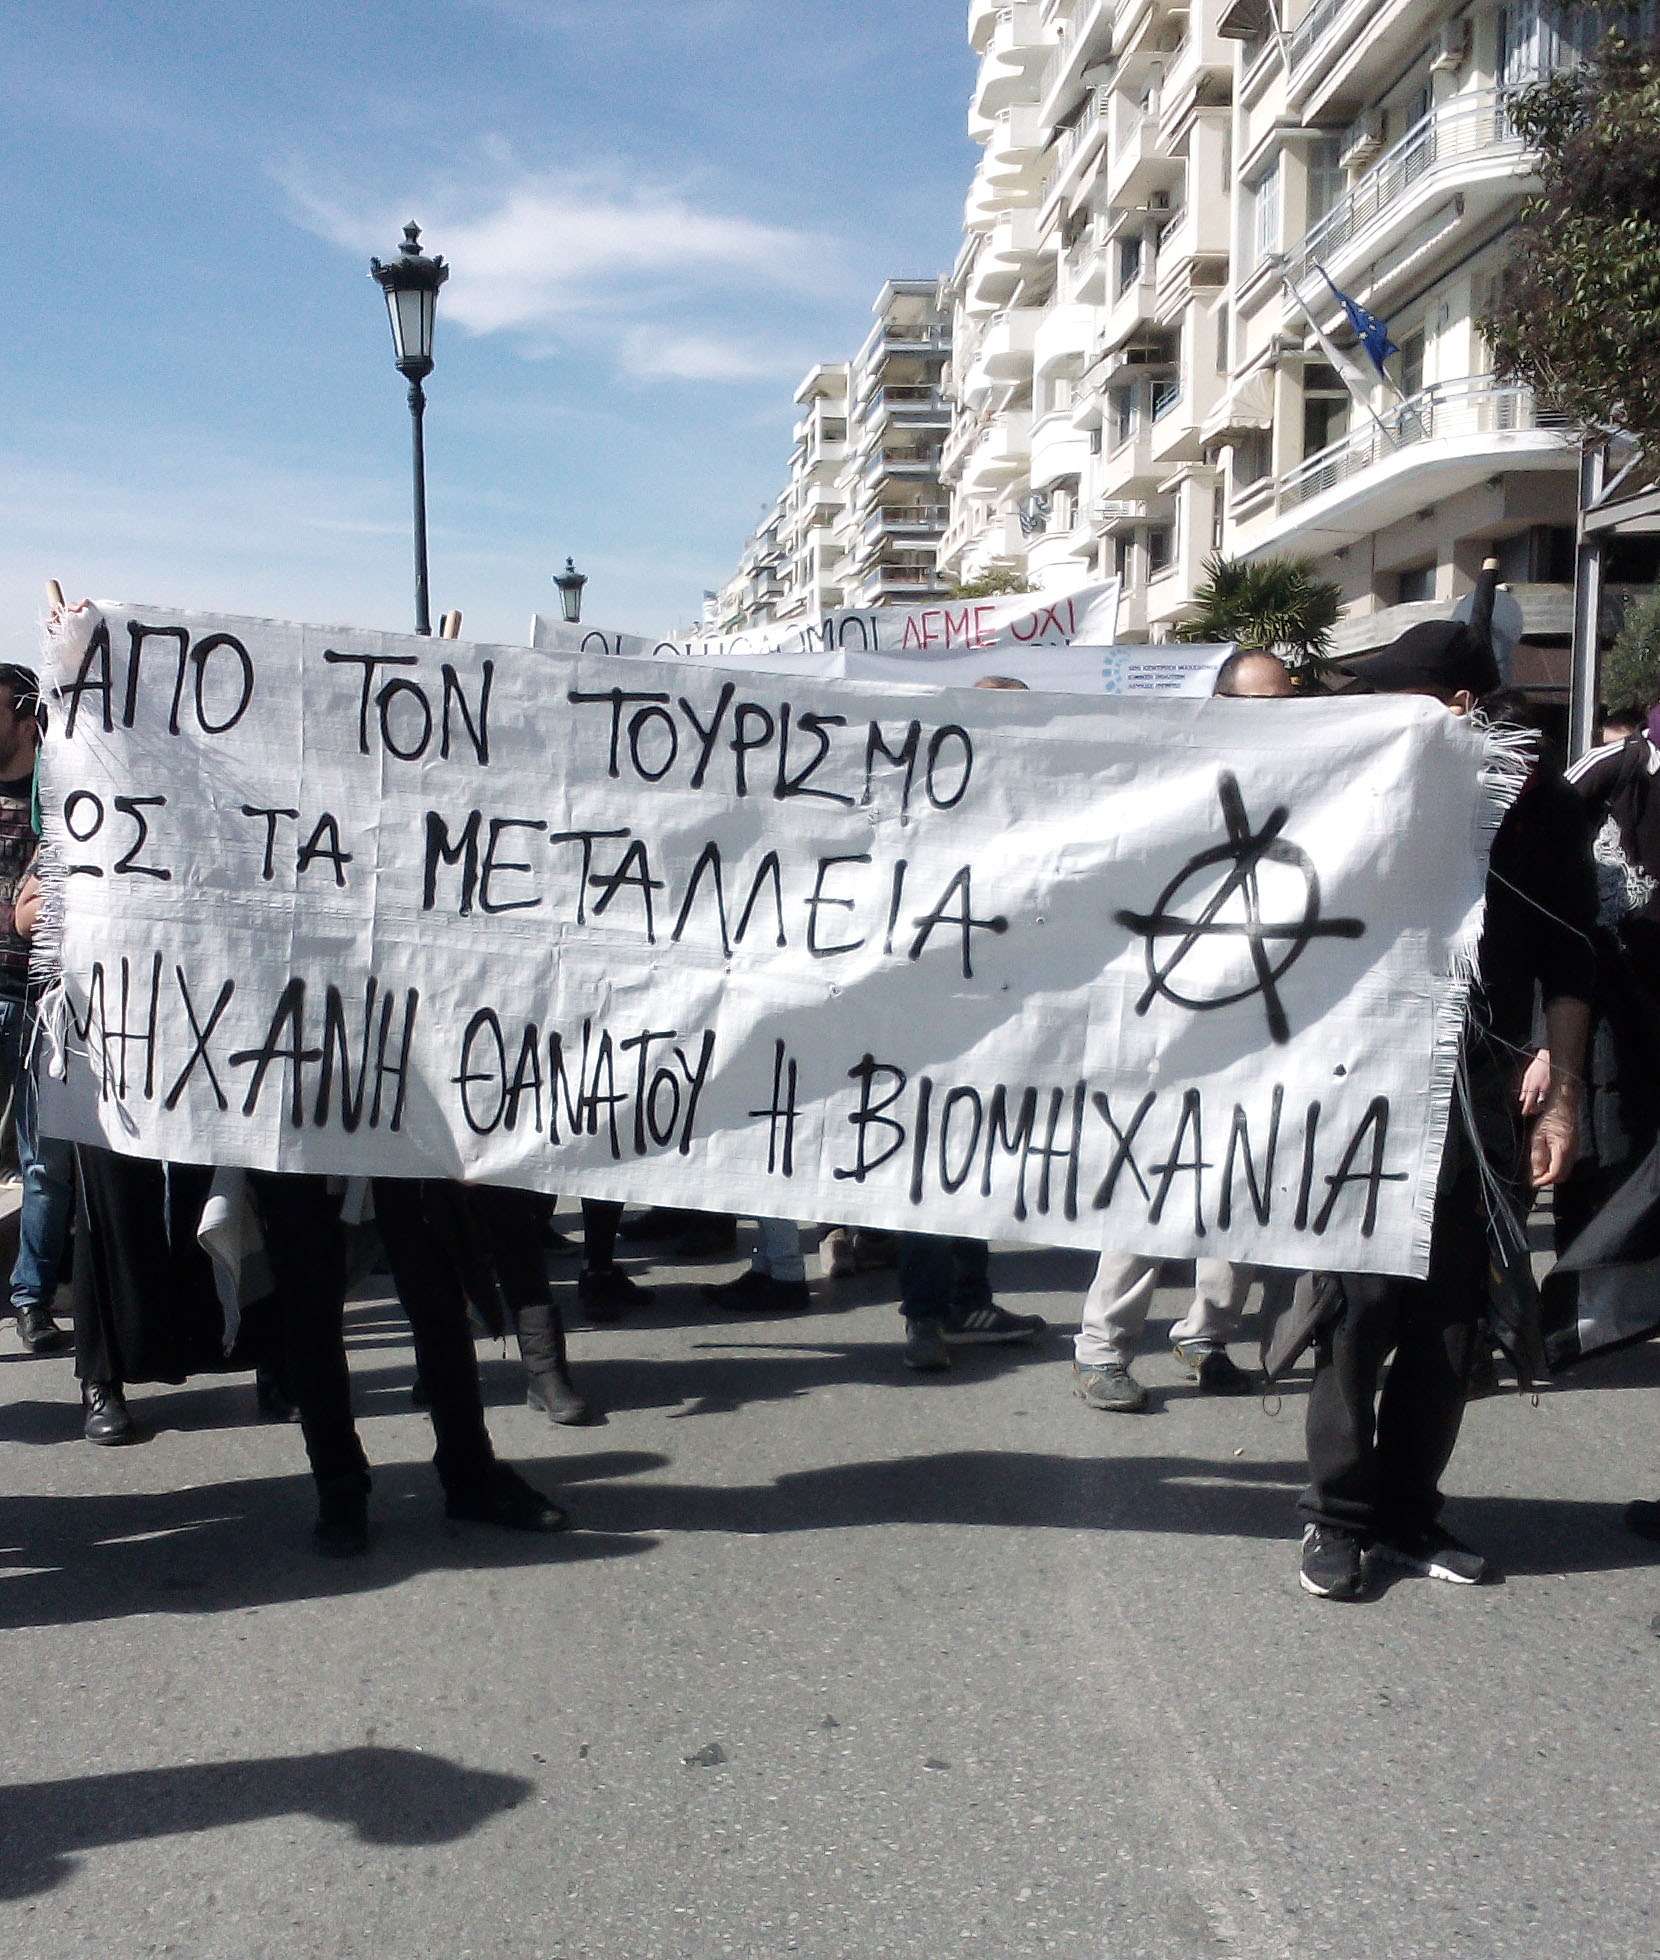 Θεσσαλονίκη: Ενημέρωση για την πορεία ενάντια στην εξόρυξη χαλκού και χρυσού στη ΒΑ Χαλκιδική